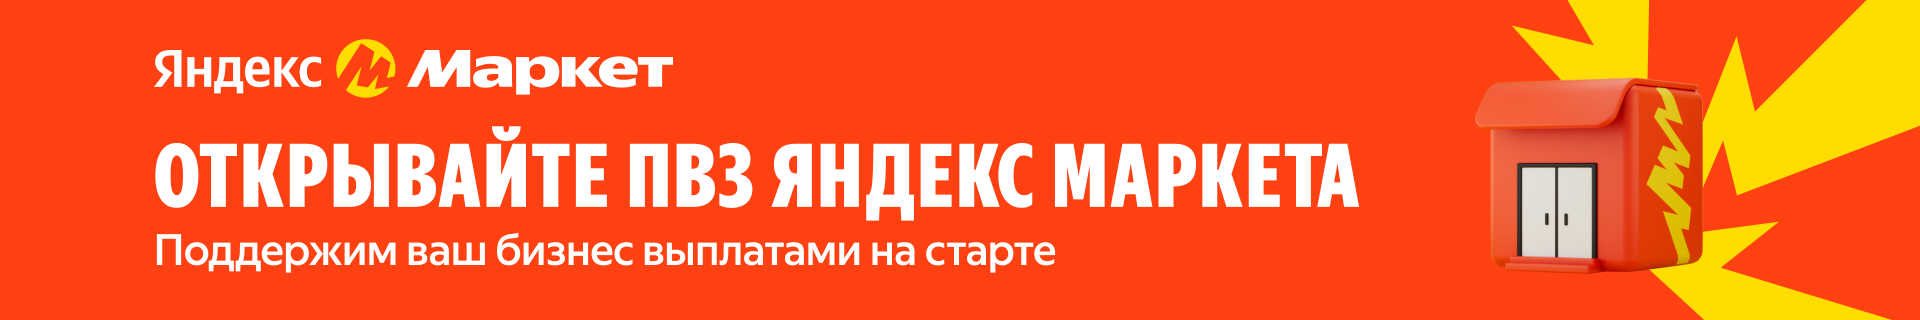 Франшиза брендированных пунктов выдачи заказов «Яндекс.Маркет»